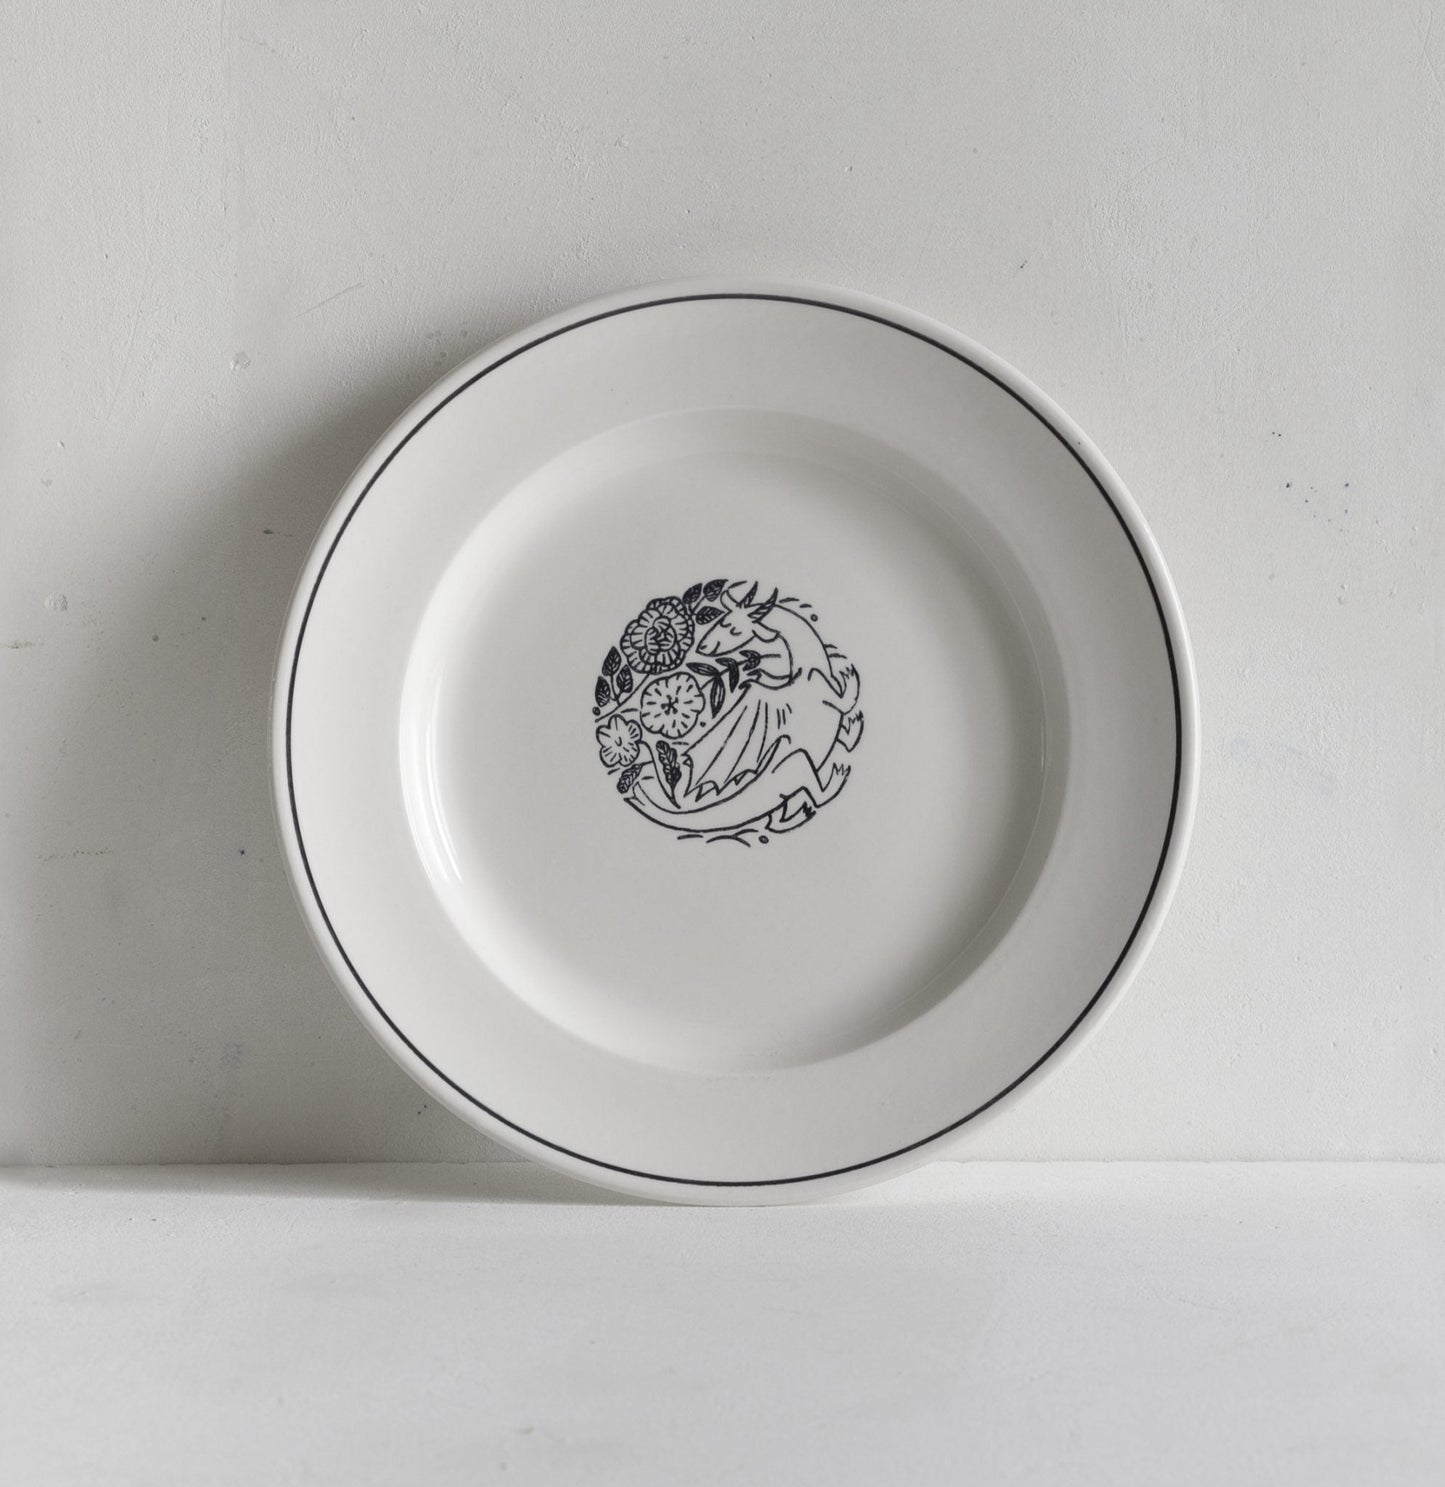 Makoto Kagoshima 27cm Dinner Plate with Dragon